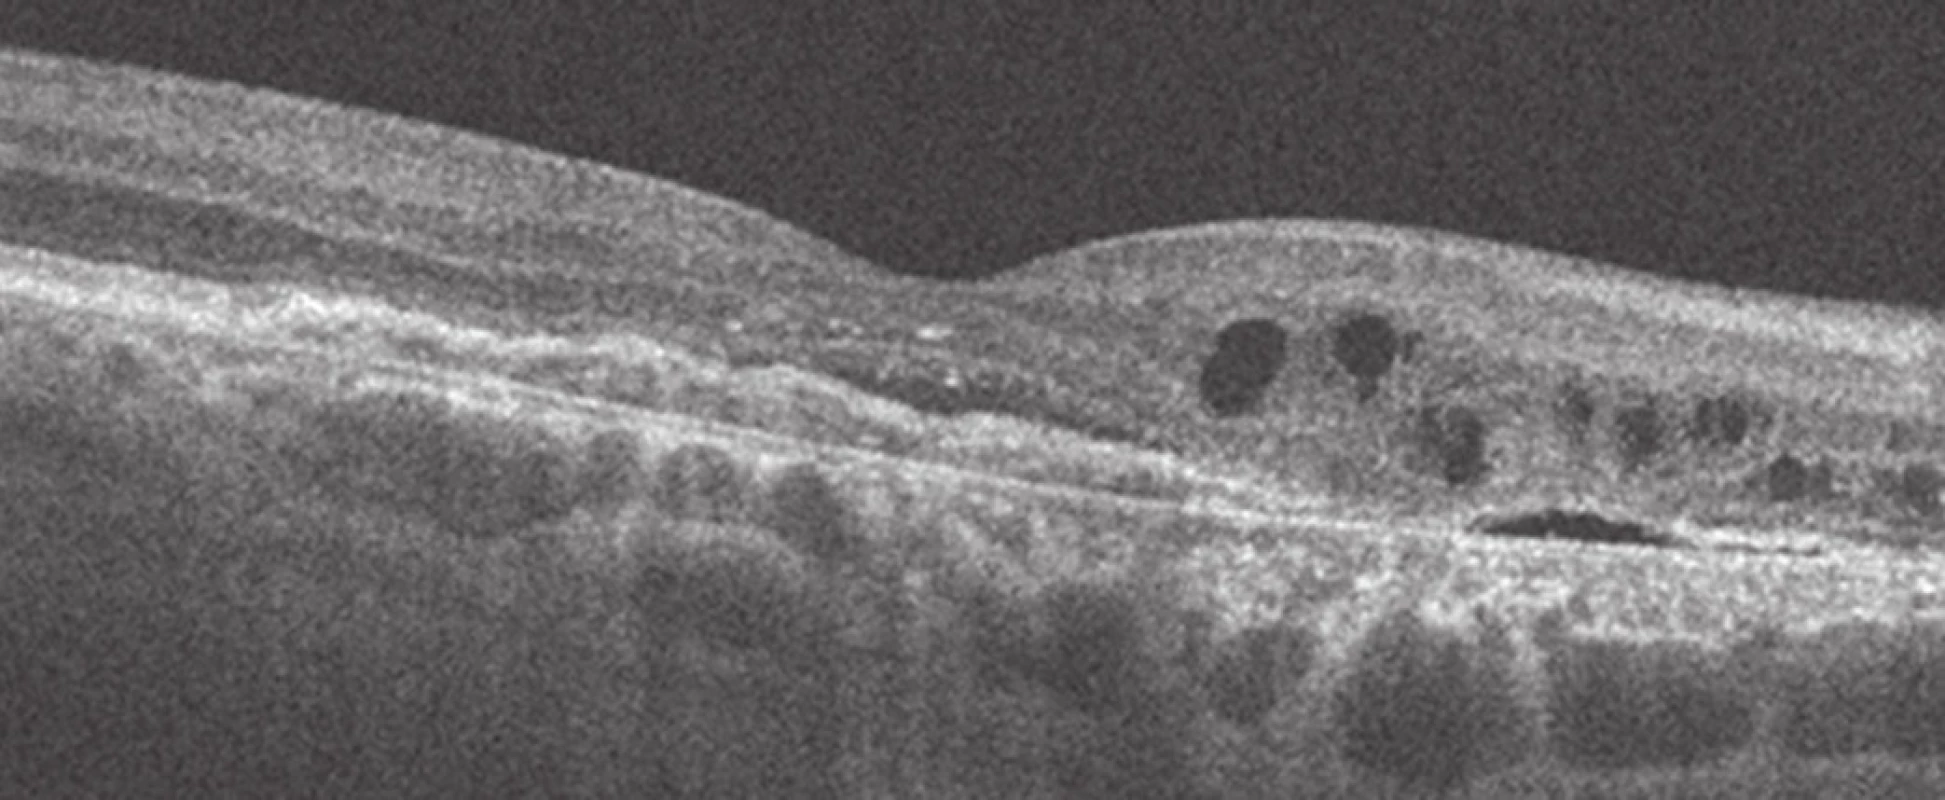 Zevní retinální tubulace (HD OCT Cirrus, Zeiss)